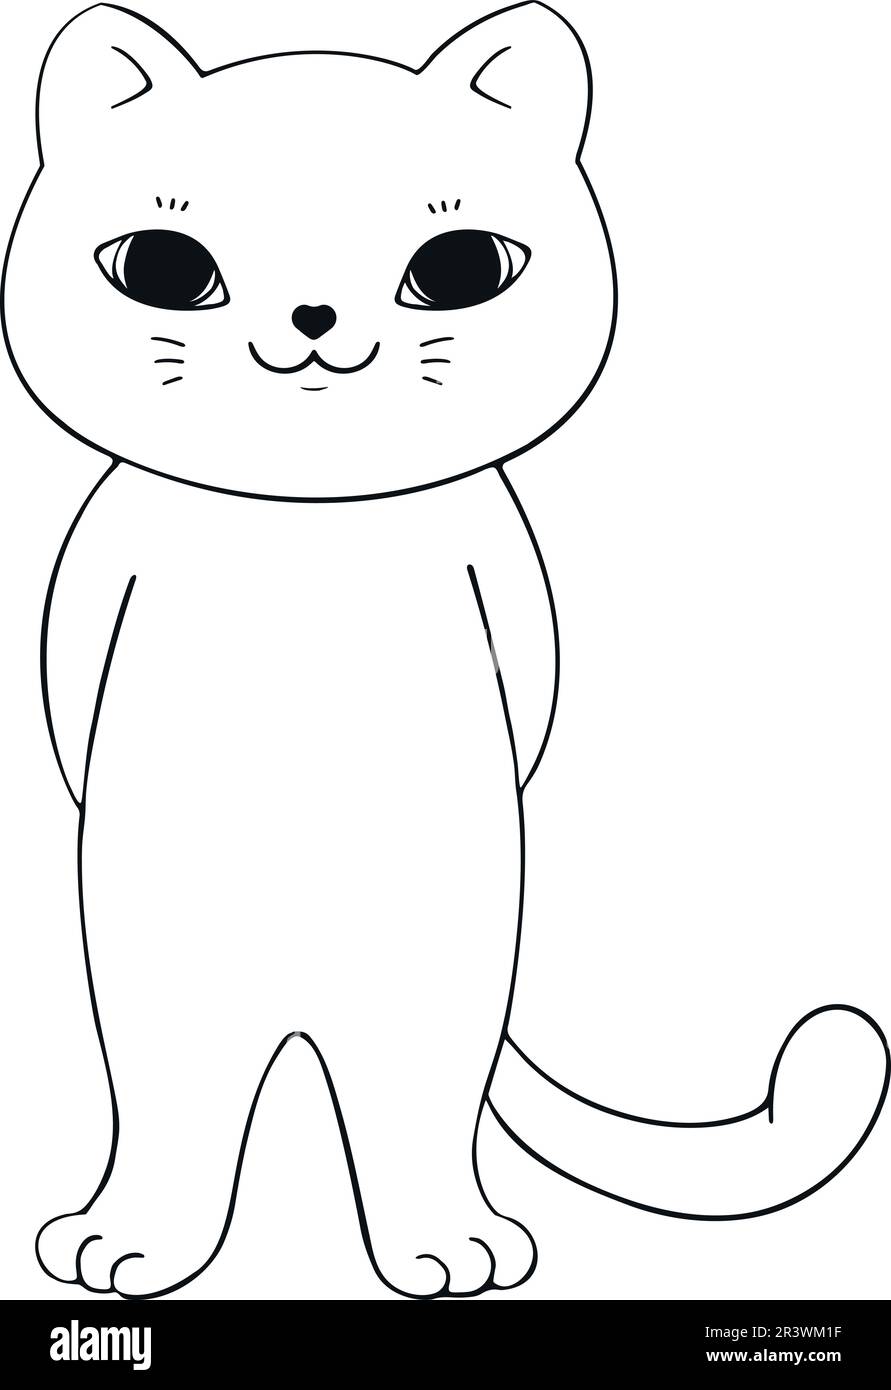 Dessin à la main, dessin animé, contour de chat isolé sur fond blanc. Chat dessiné à la main. Esquisse. Art vectoriel Illustration de Vecteur